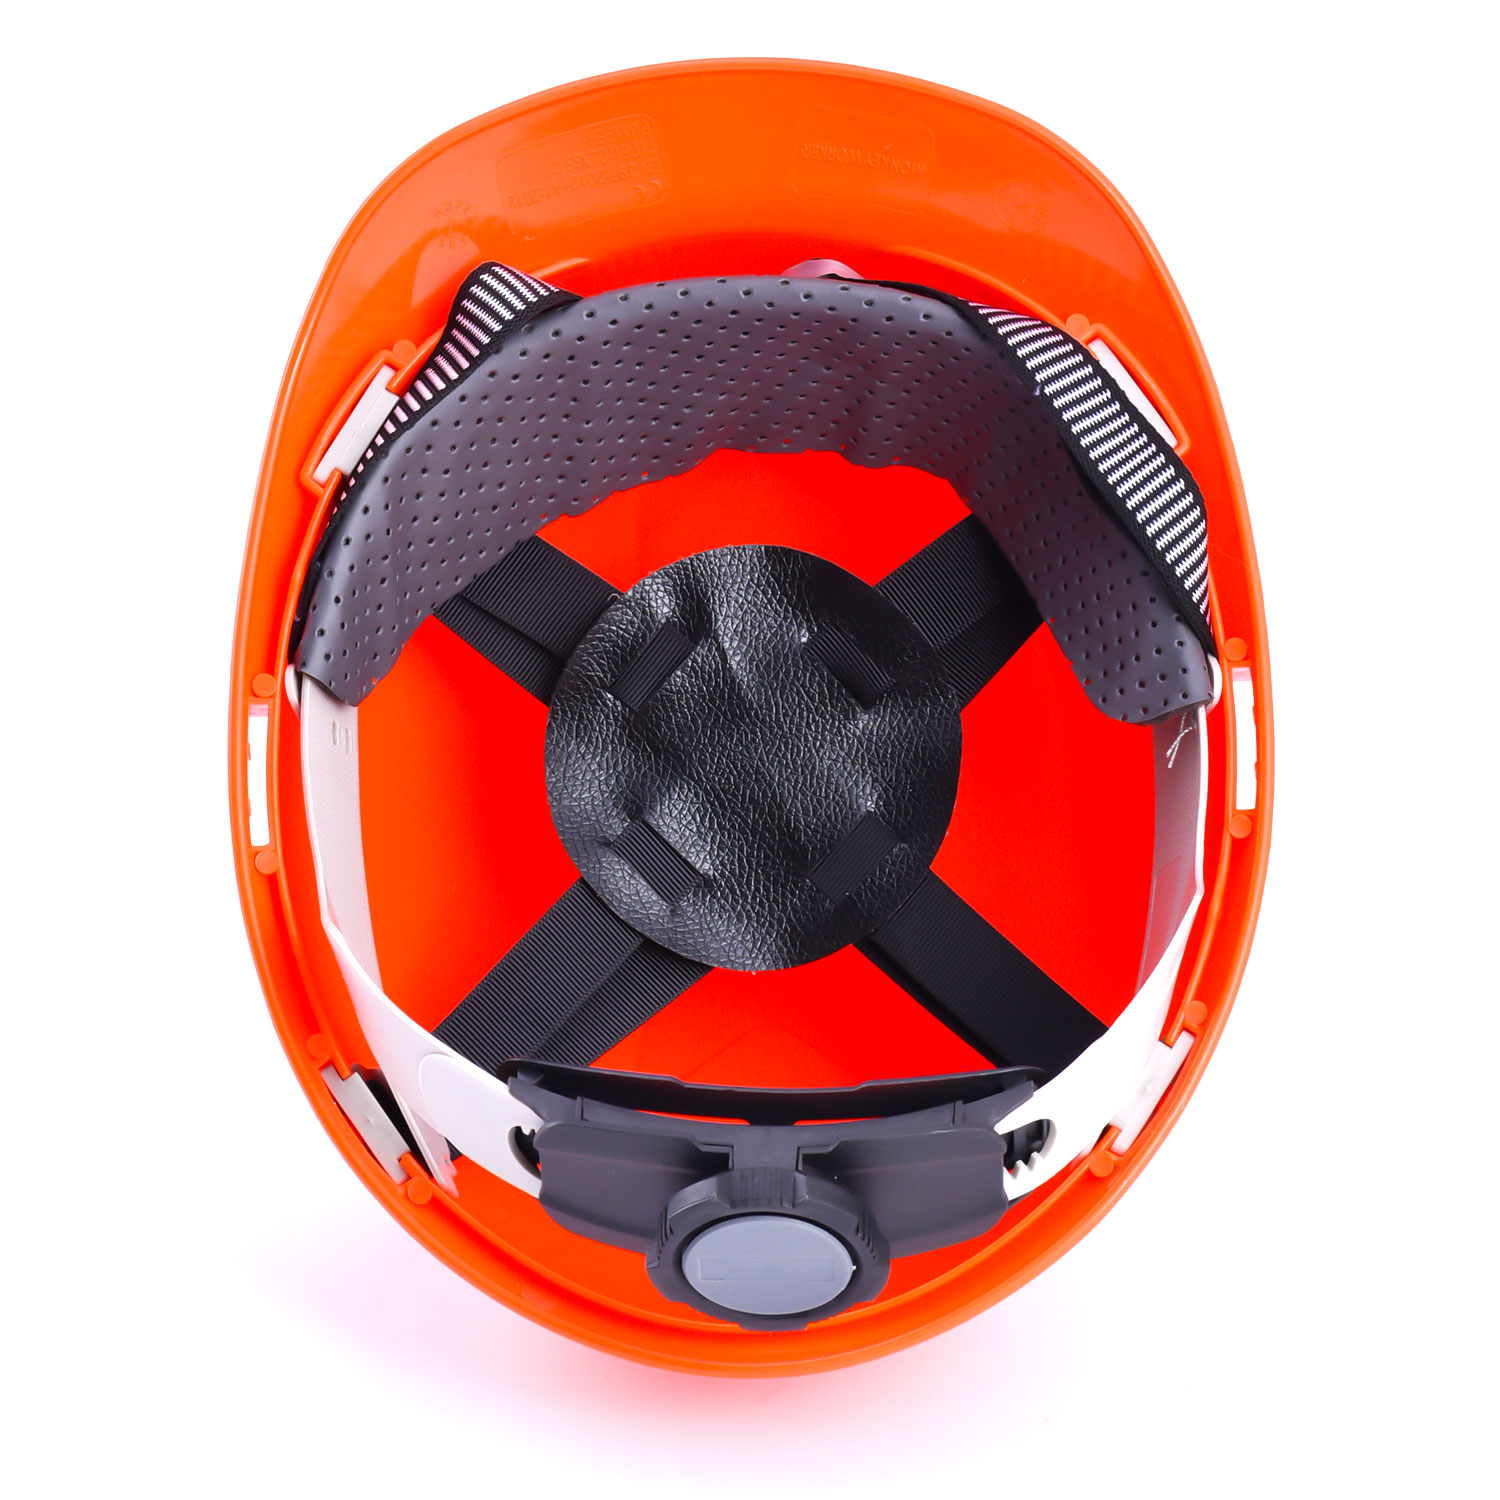 Helmets de seguridad industrial azul W-003